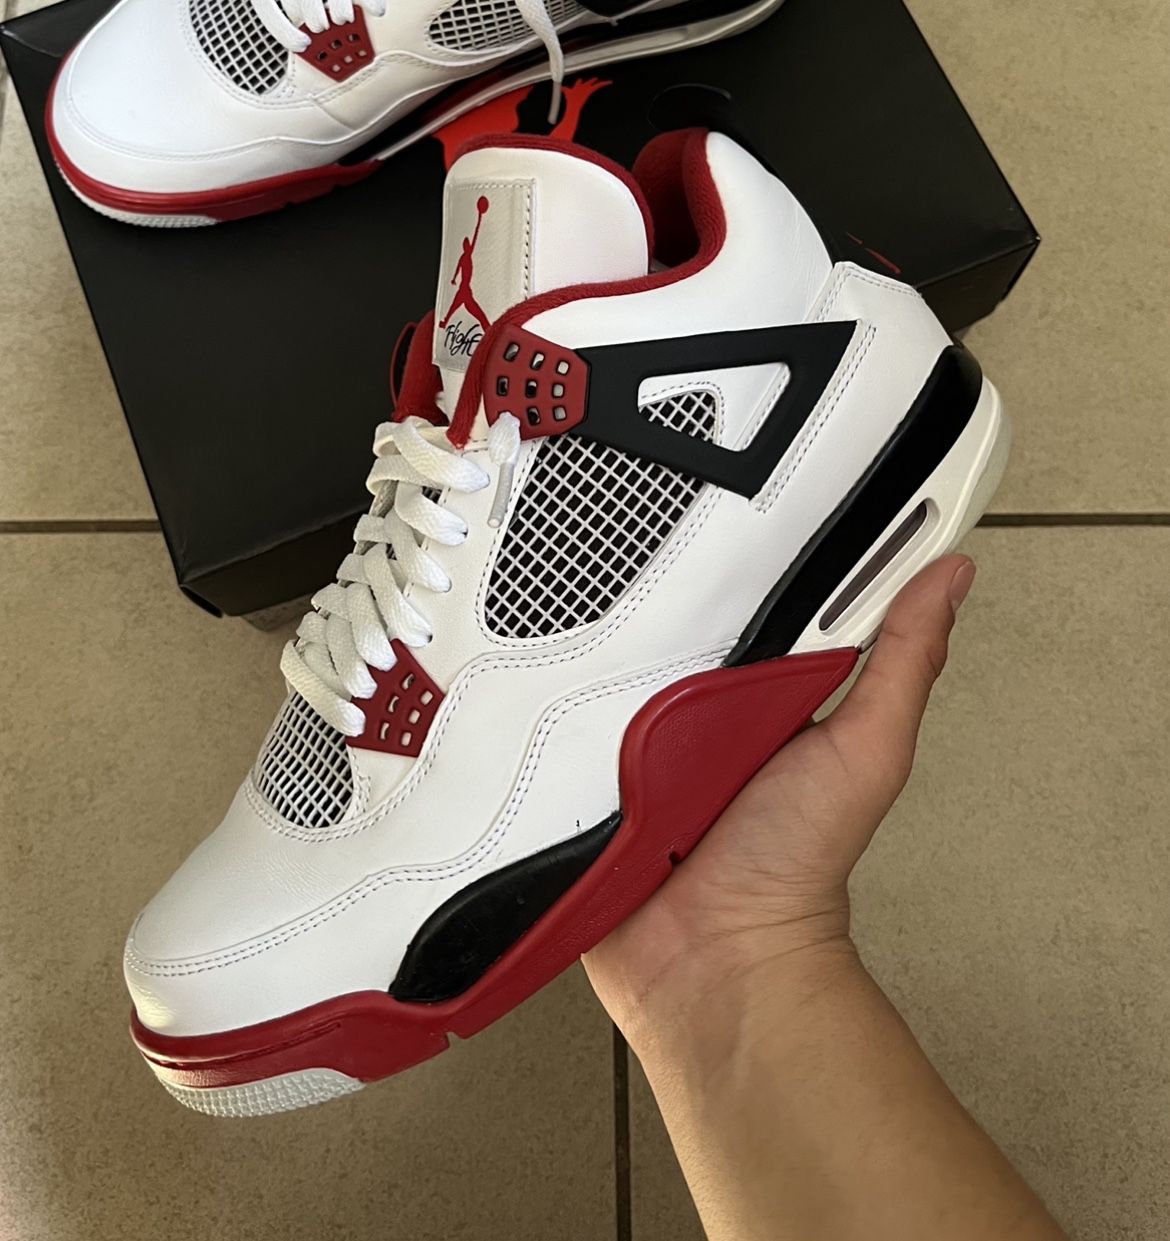 Jordan 4 “Fire Red” (Size 10.5)